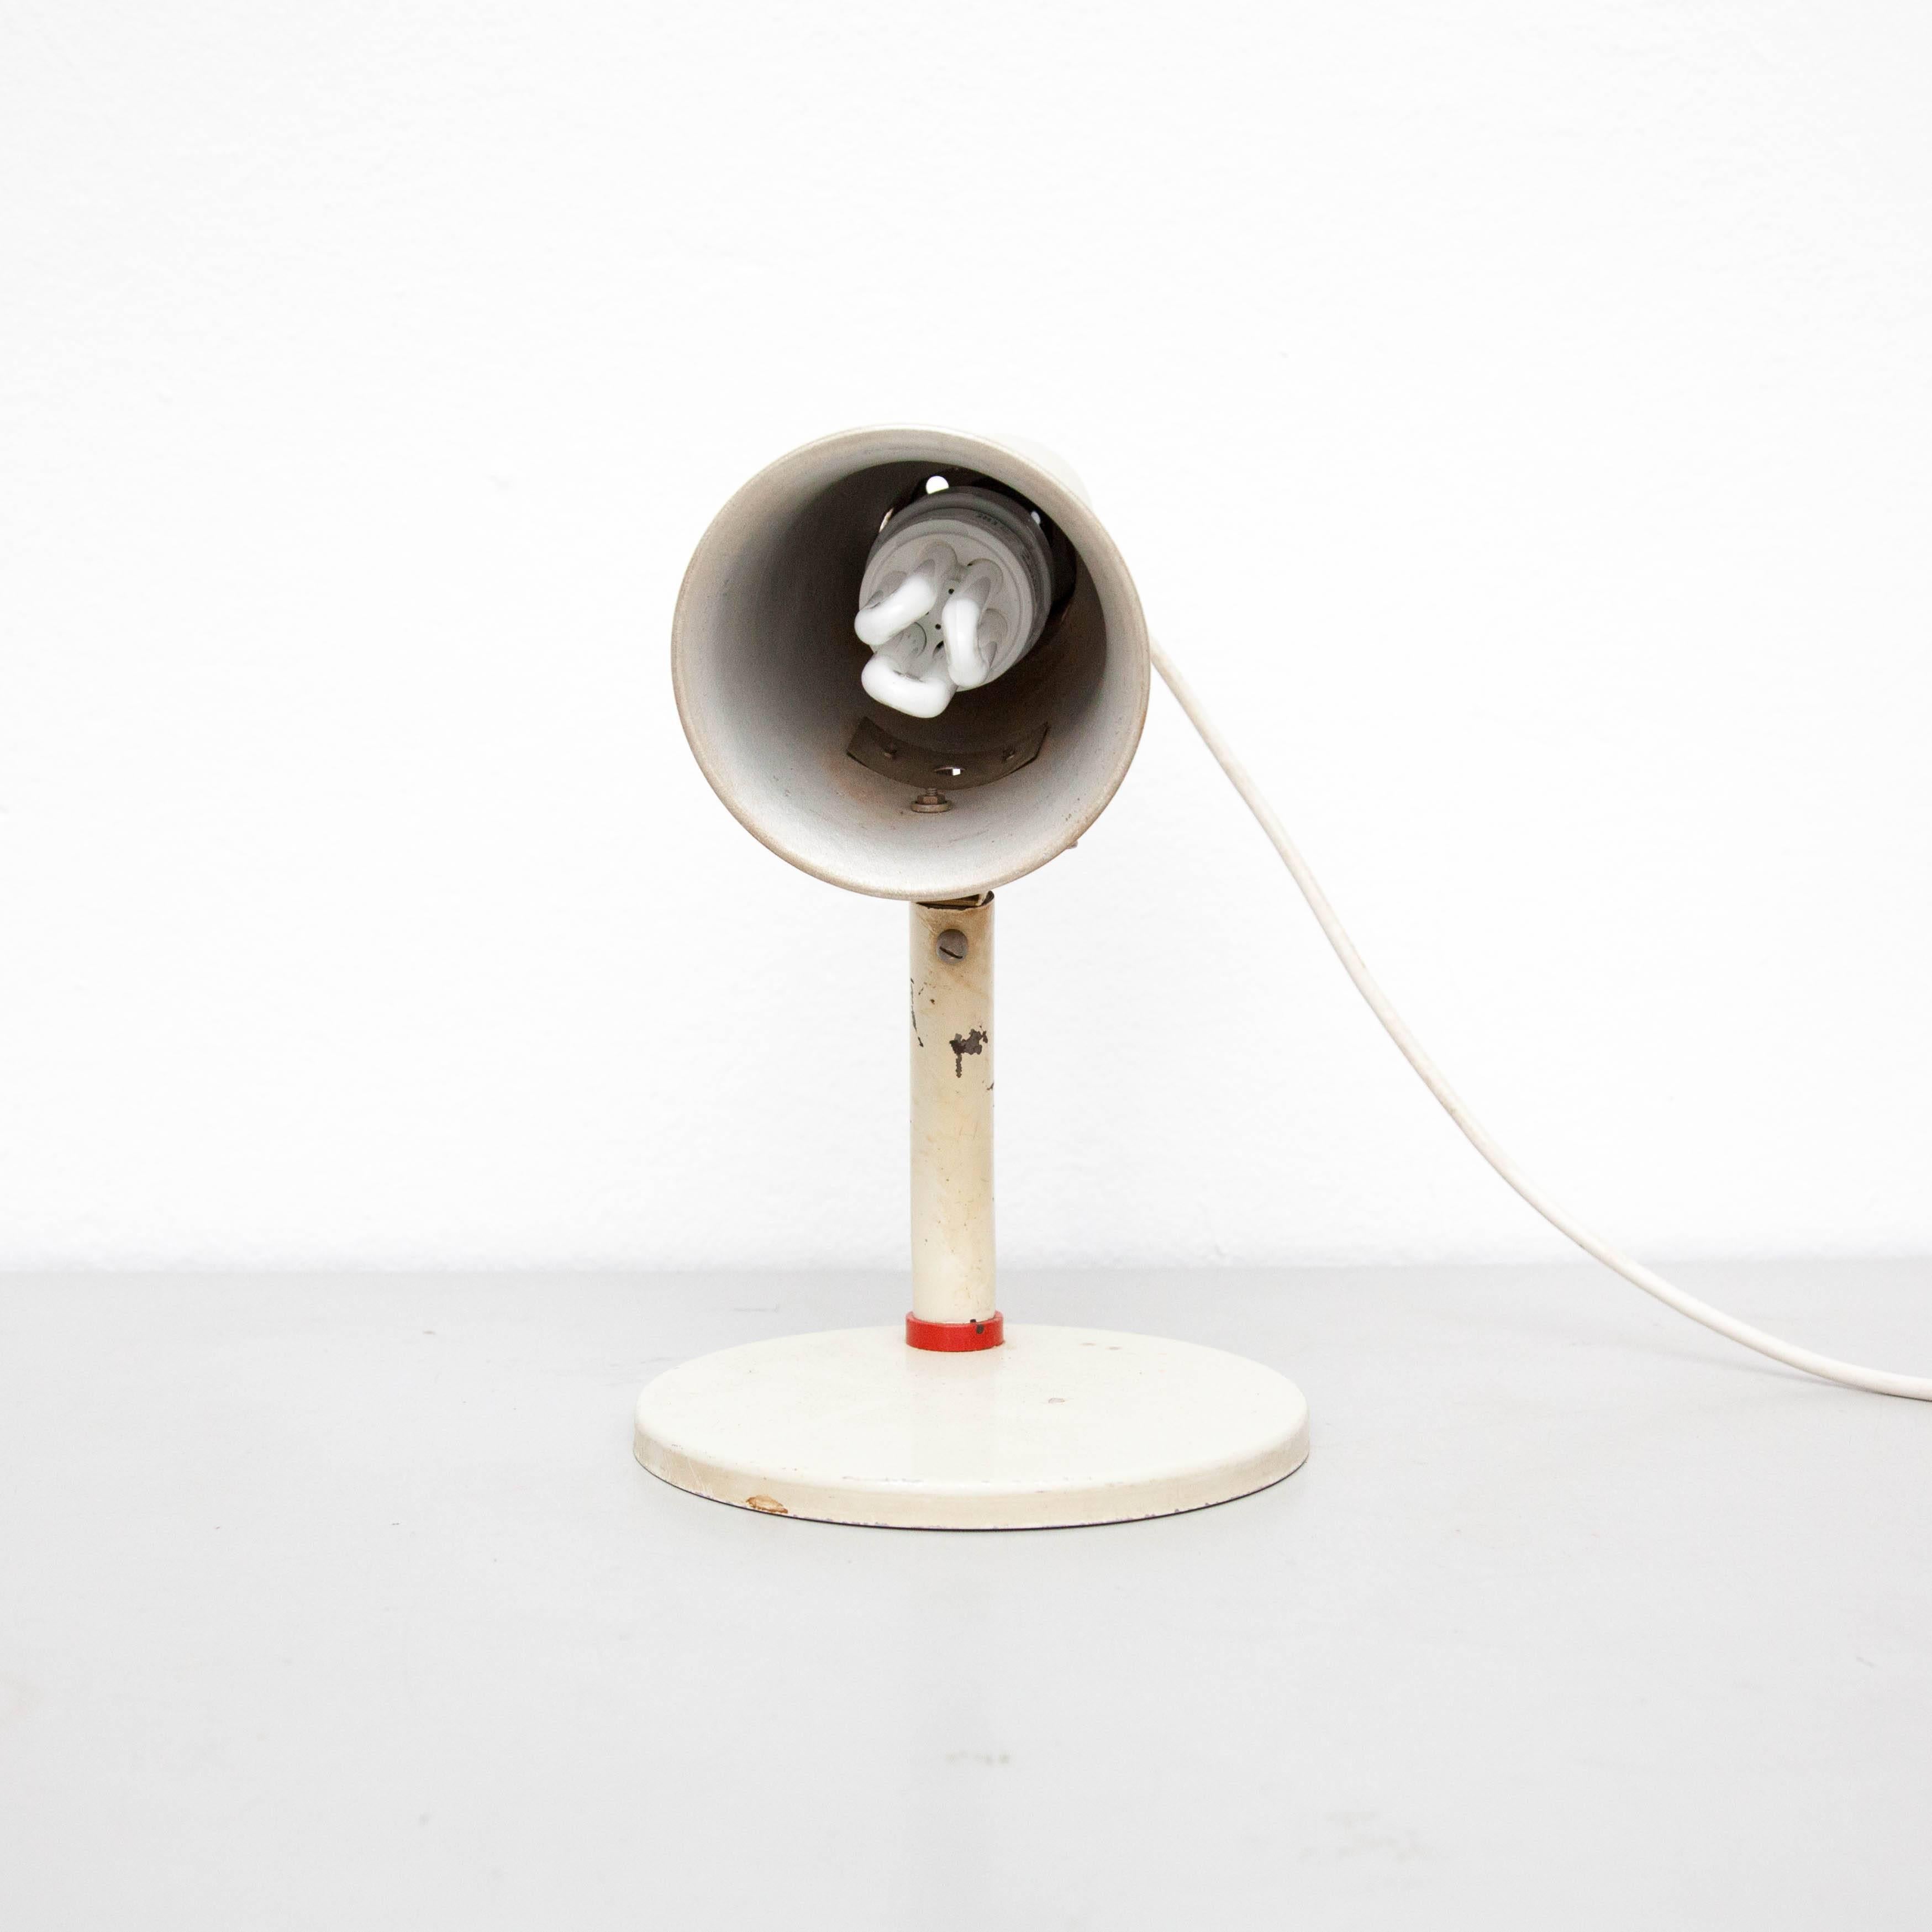 Lampe de table conçue par Marianne Brandt en 1928.
Fabriqué par Kandem (Allemagne).
Métal laqué.

En état d'origine, avec une usure mineure conforme à l'âge et à l'utilisation, préservant une belle patine.

Marianne Brandt (1893-1983) Peintre,